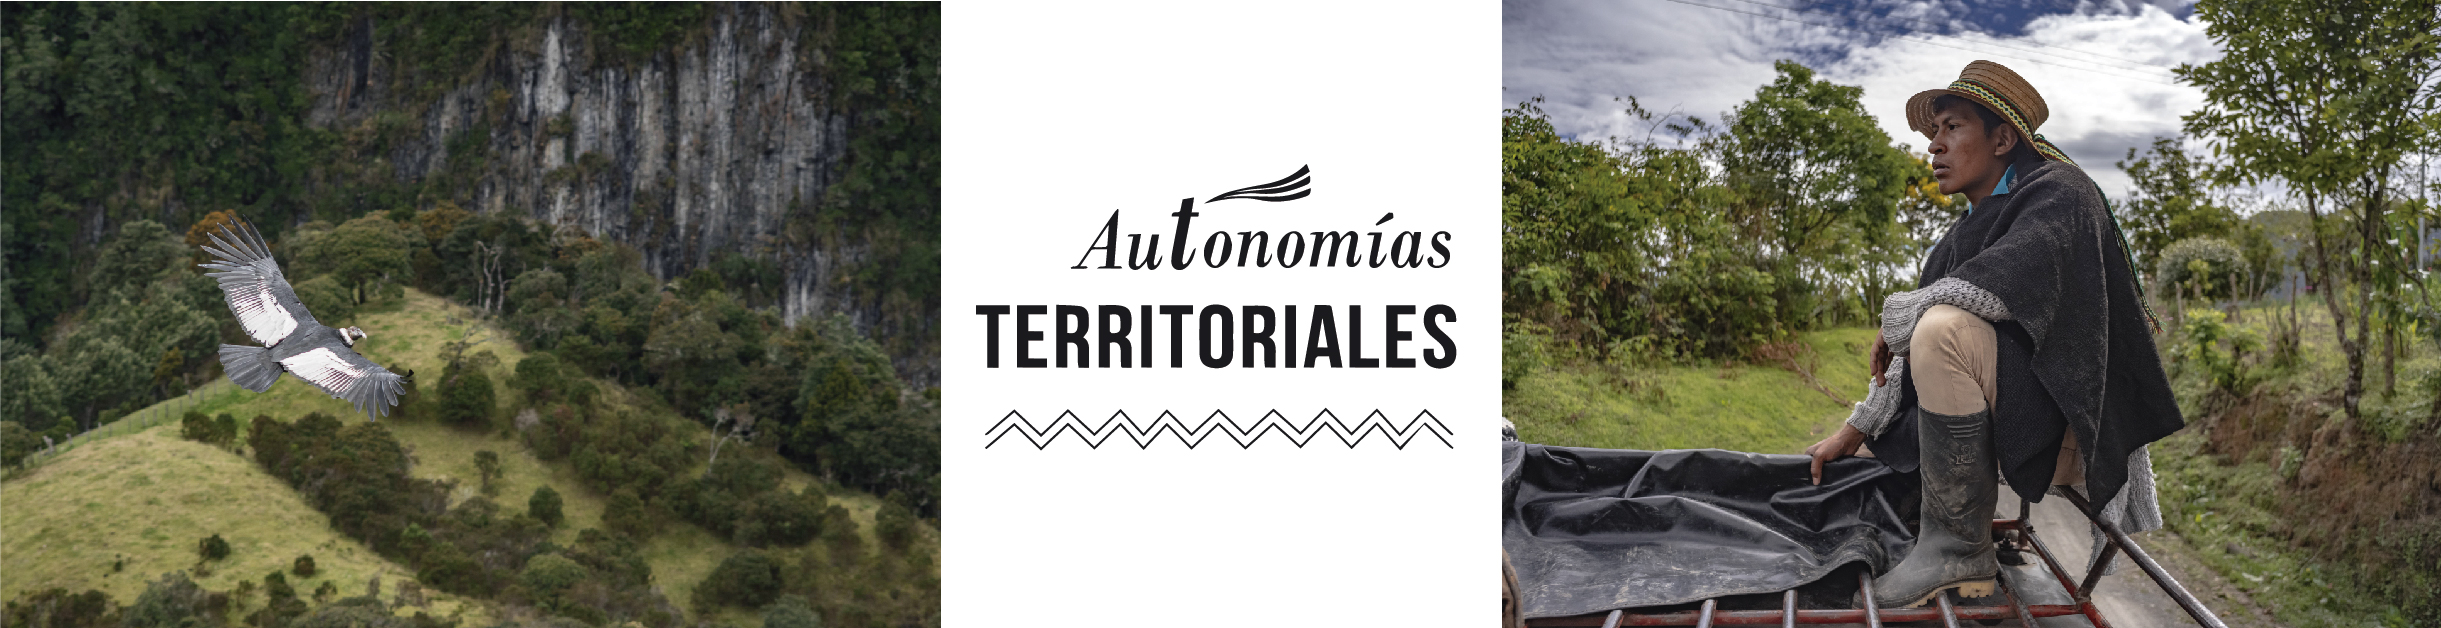 Autonomias territoriales CRIC 3ra temporada (4)